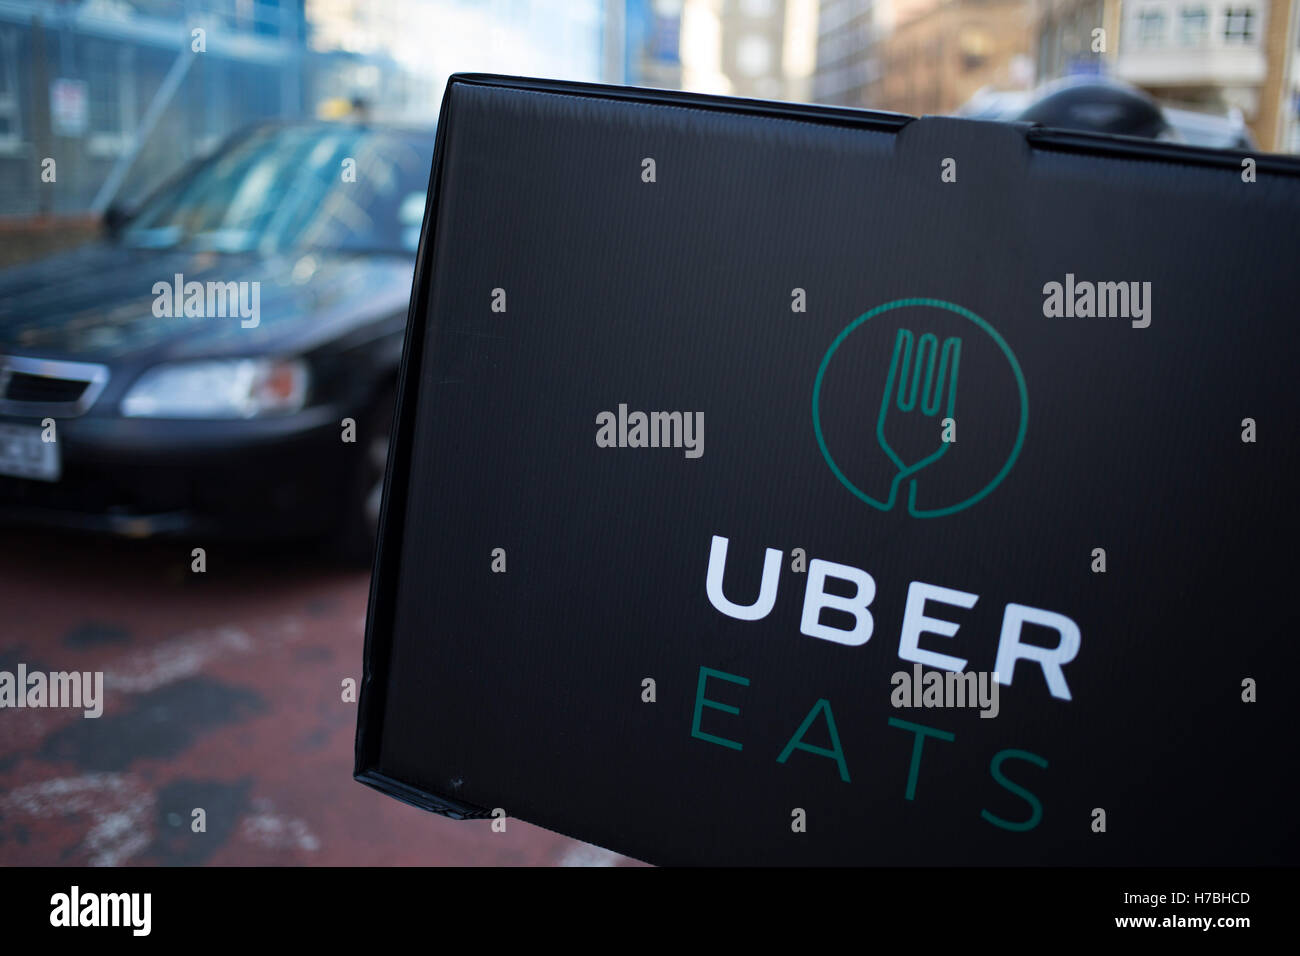 Uber Eats Stock Photos & Uber Eats Stock Images - Alamy1300 x 956